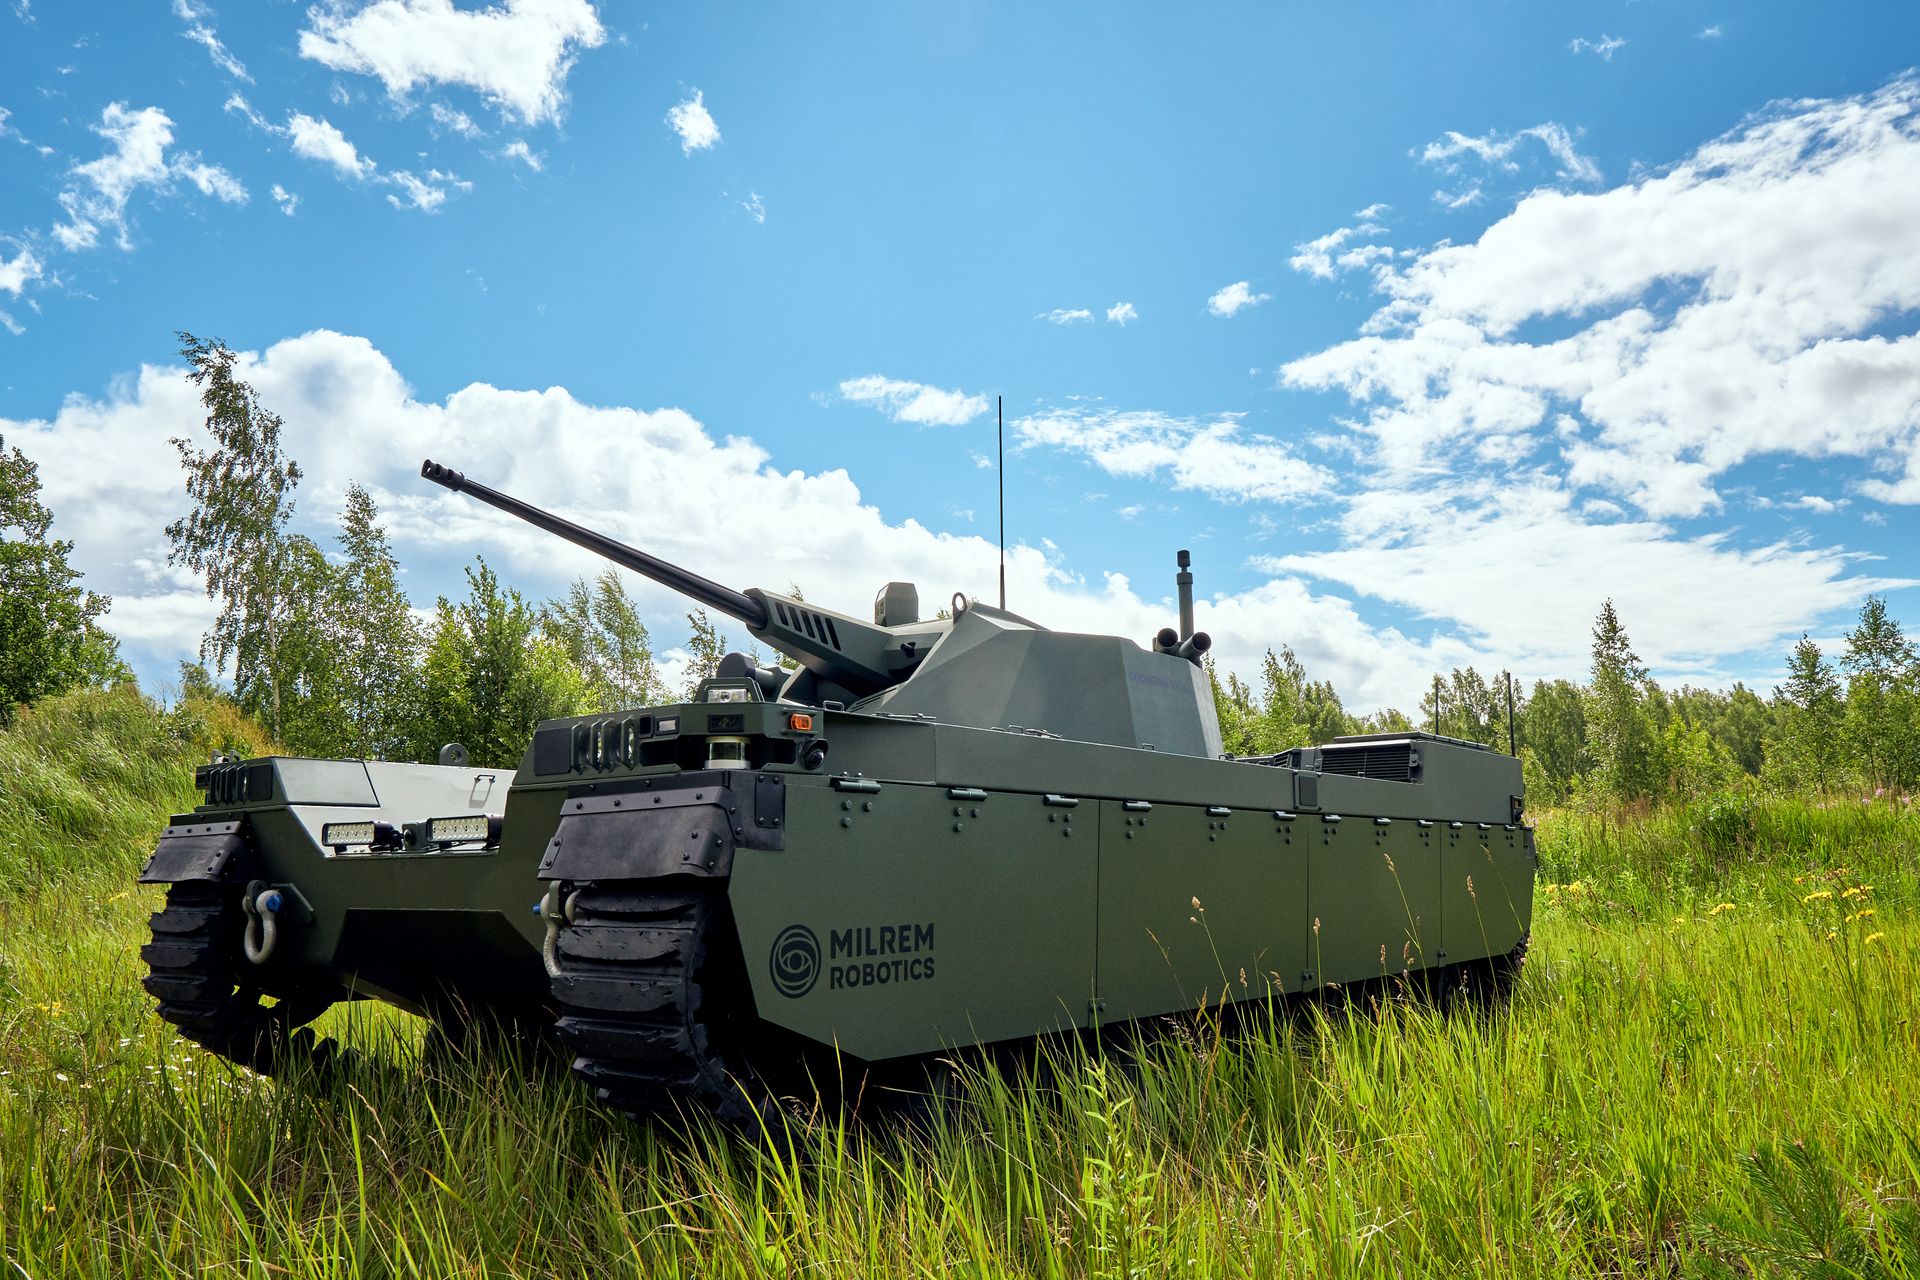 Type-X Combat ທີ່ສ້າງຂຶ້ນໂດຍບໍລິສັດ Milrem Robotics ທີ່ຕັ້ງຢູ່ Estonian ມີຈຸດປະສົງເພື່ອສະຫນັບສະຫນູນຫນ່ວຍງານກົນຈັກແລະເປັນບ່າຂອງລົດຖັງຮົບຕົ້ນຕໍ: ຍານພາຫະນະສາມາດຕິດຕັ້ງດ້ວຍປືນອັດຕະໂນມັດຕ່າງໆຈາກ 25 ຫາ 50mm.